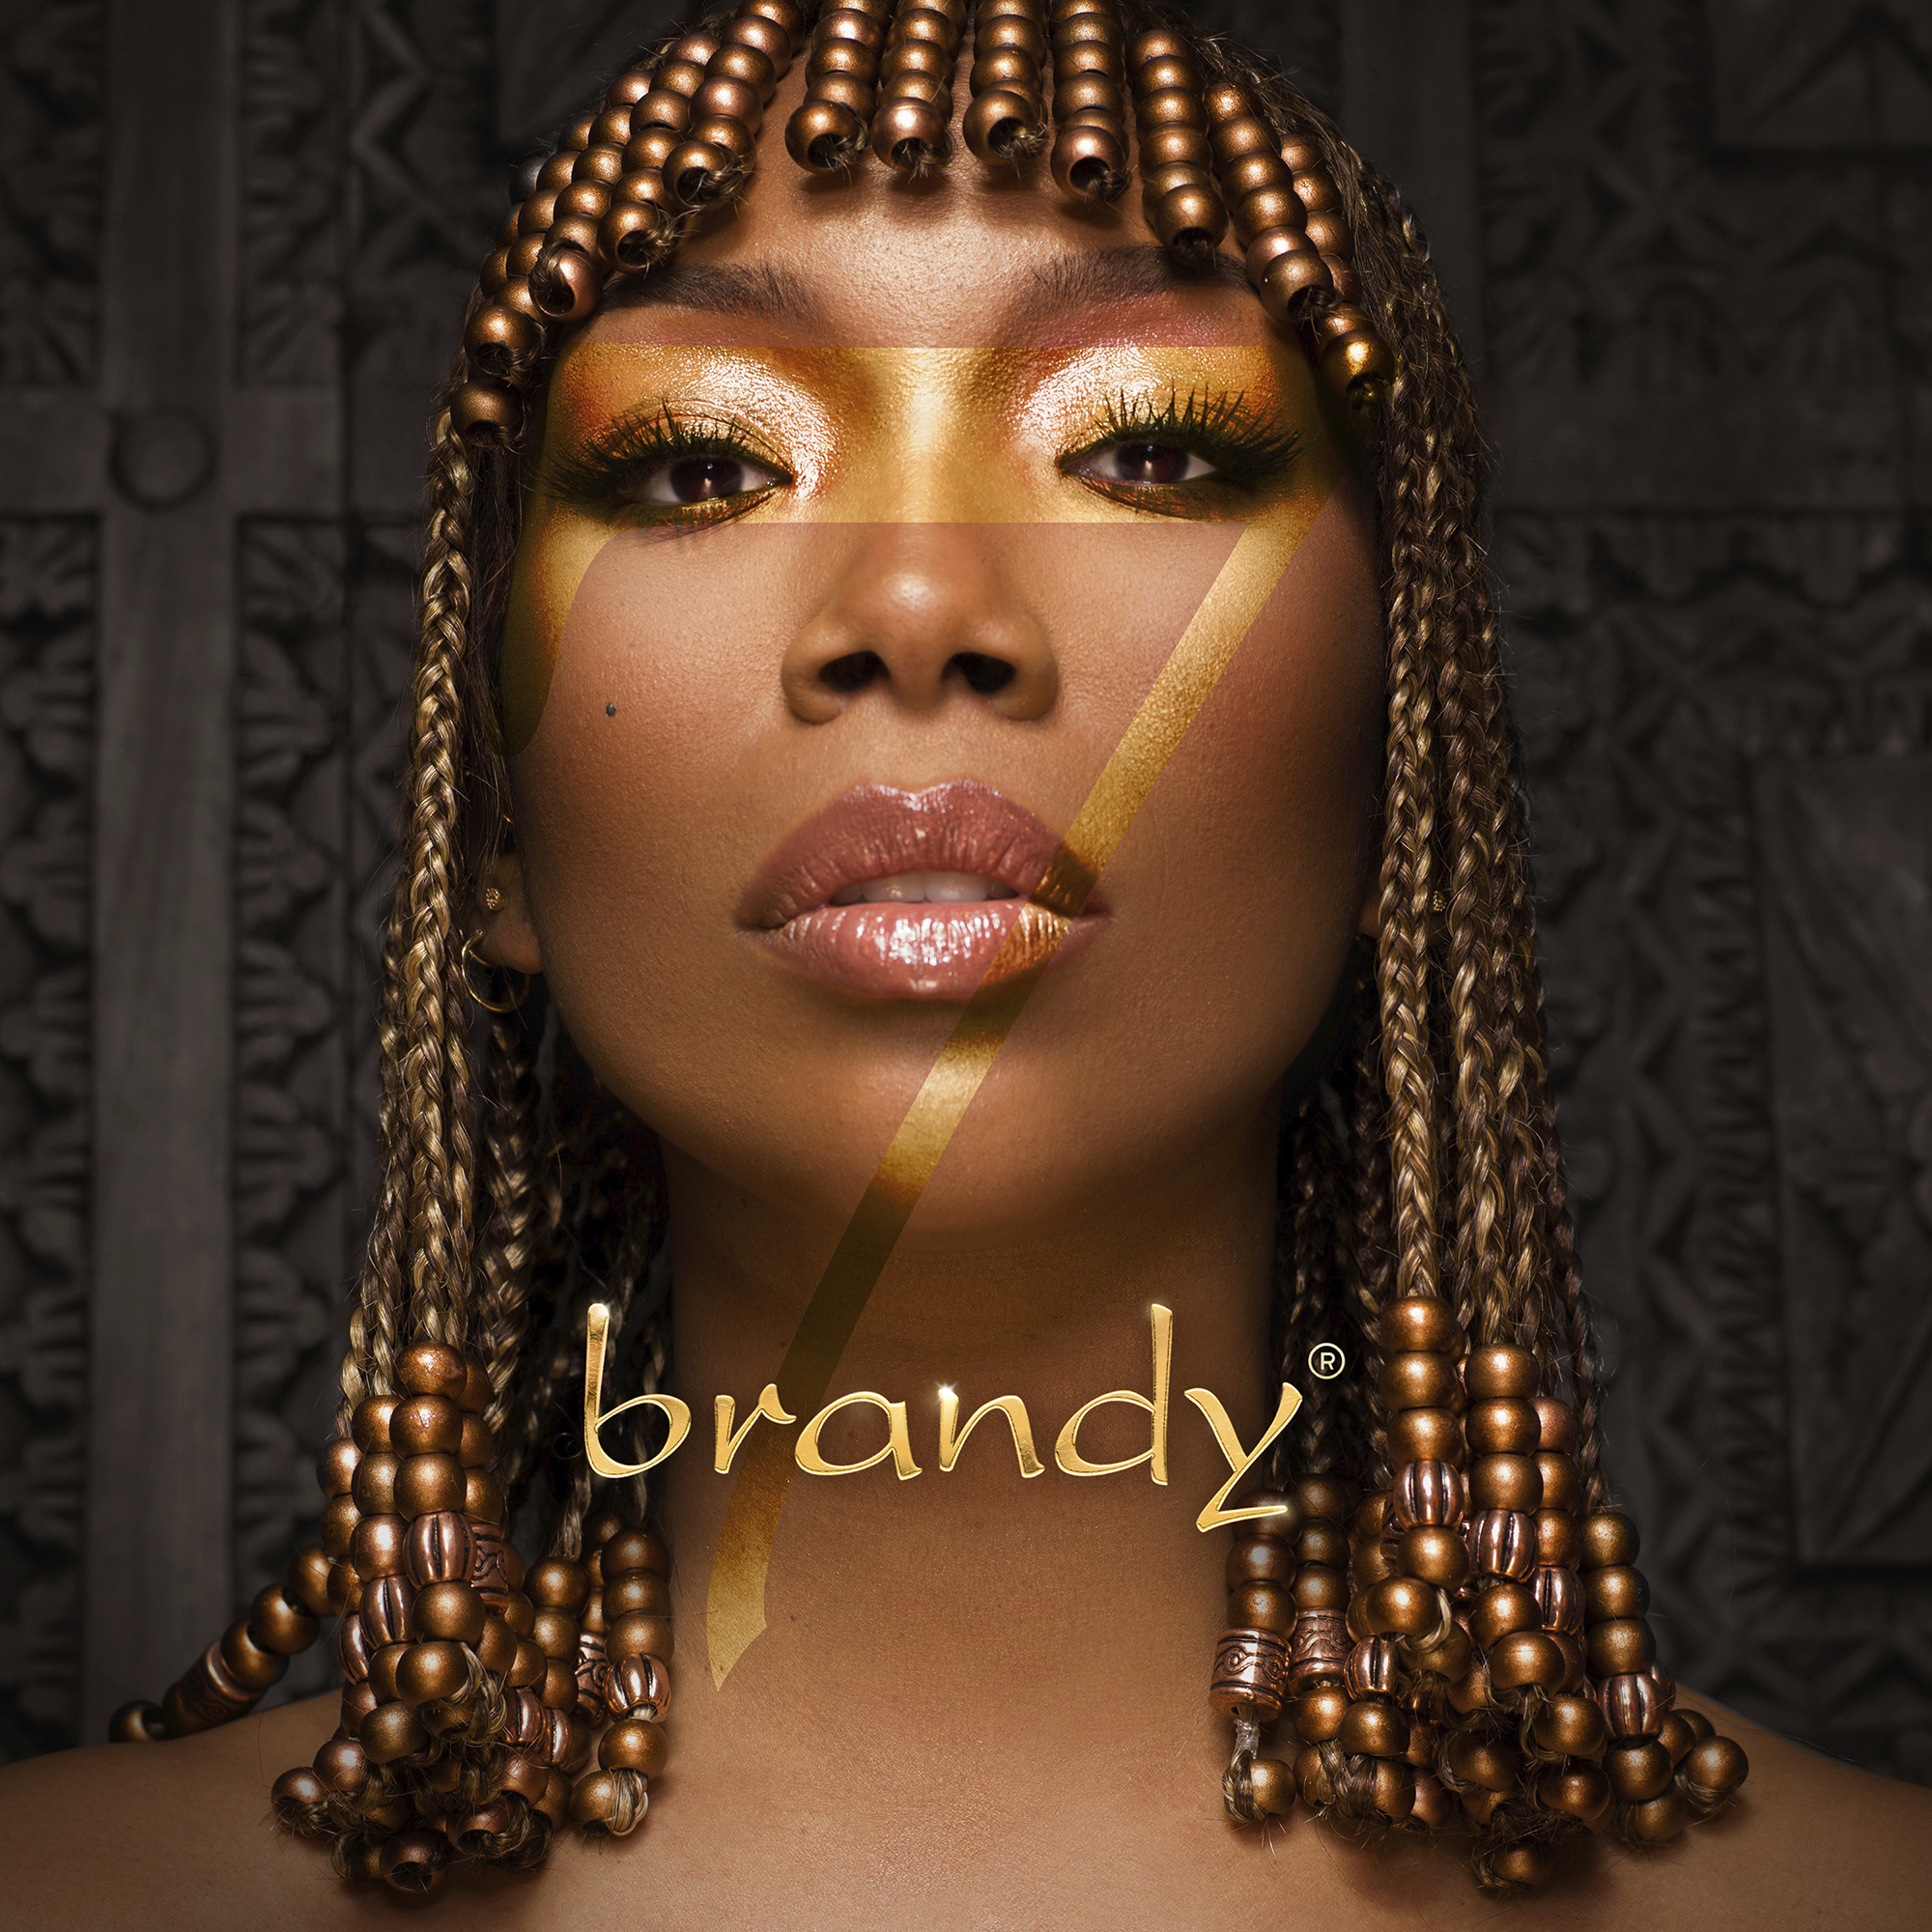 Brandy, Dose of sultry, R&B comeback, LP B7, 2000x2000 HD Handy